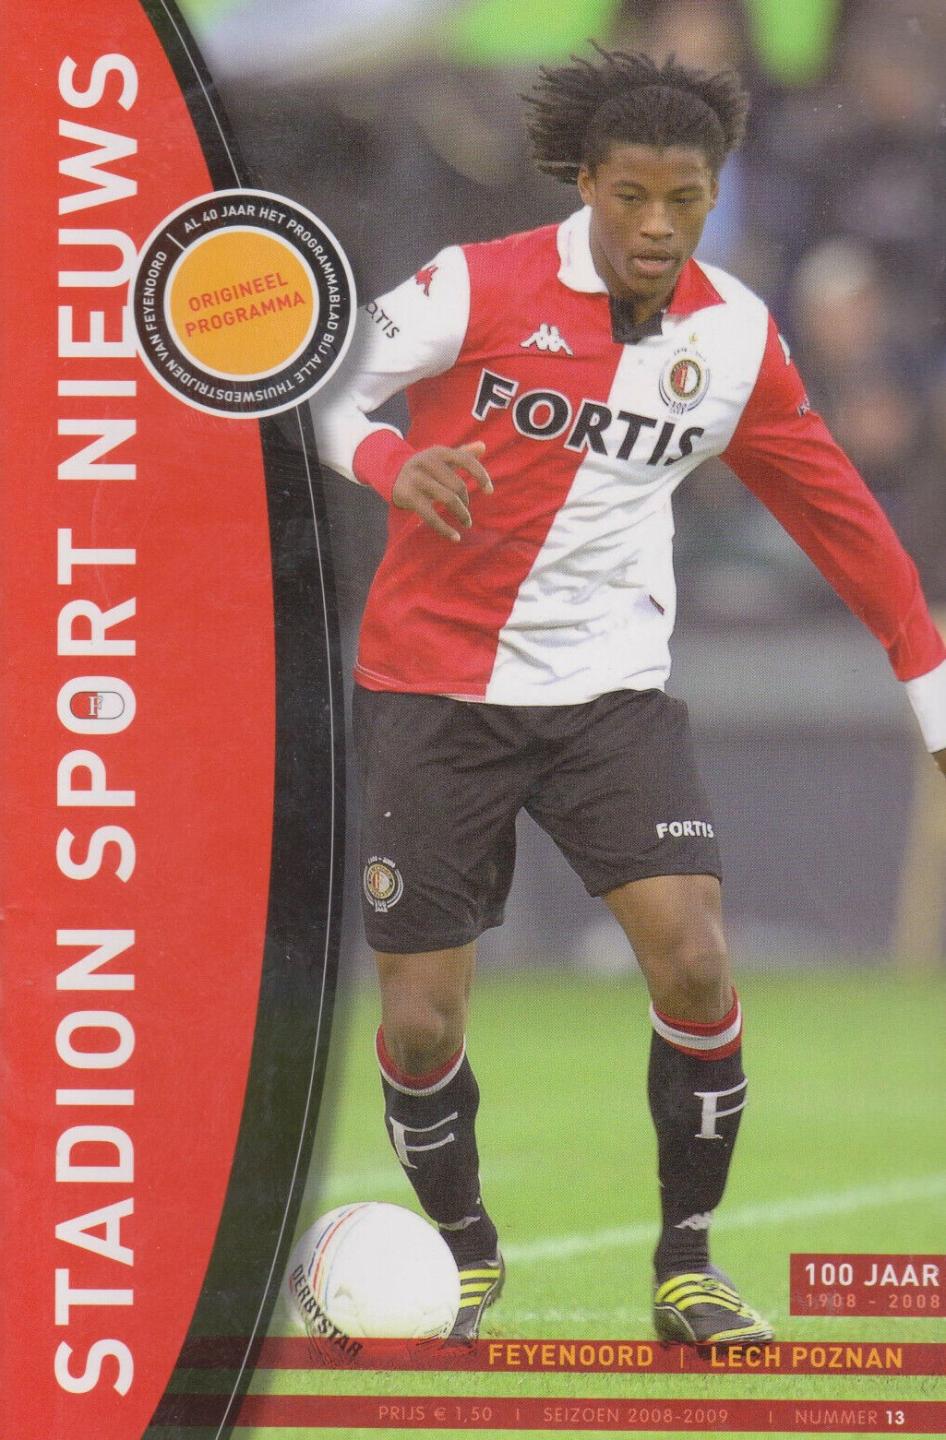 Feyenoord Rotterdam - Lech Poznań 0:1 (17.12.2008)